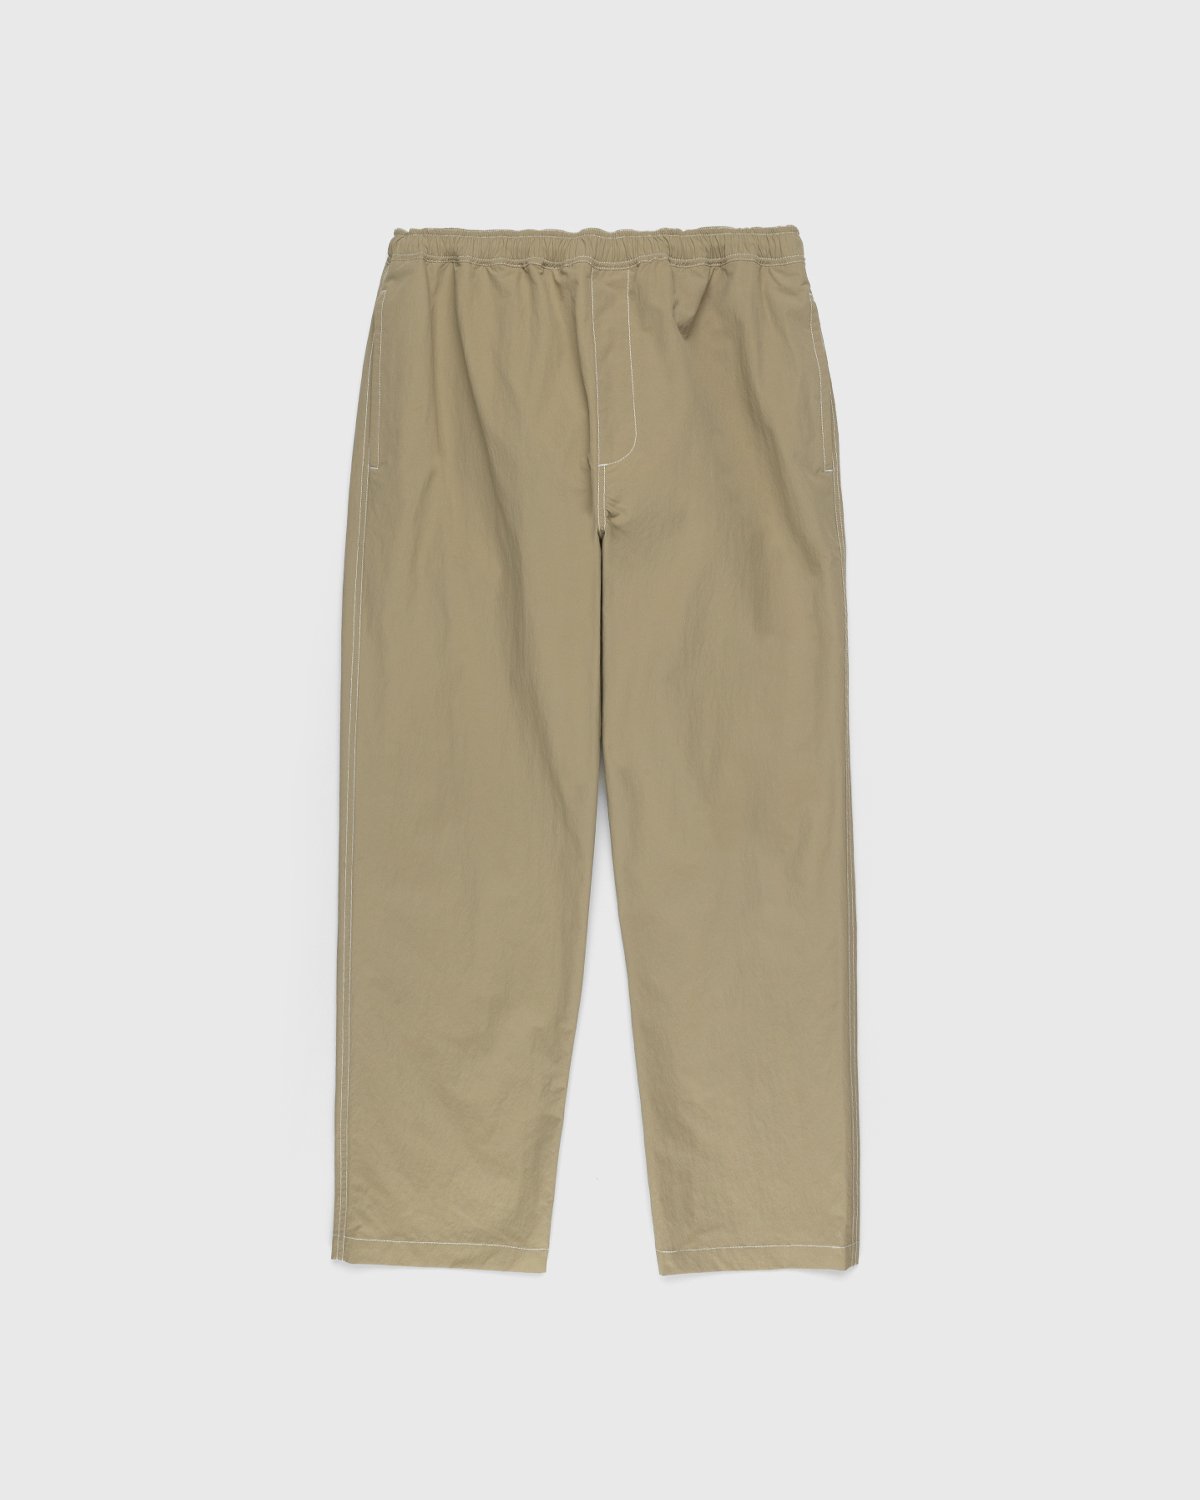 Highsnobiety - Contrast Brushed Nylon Elastic Pants Beige - Clothing - Beige - Image 1